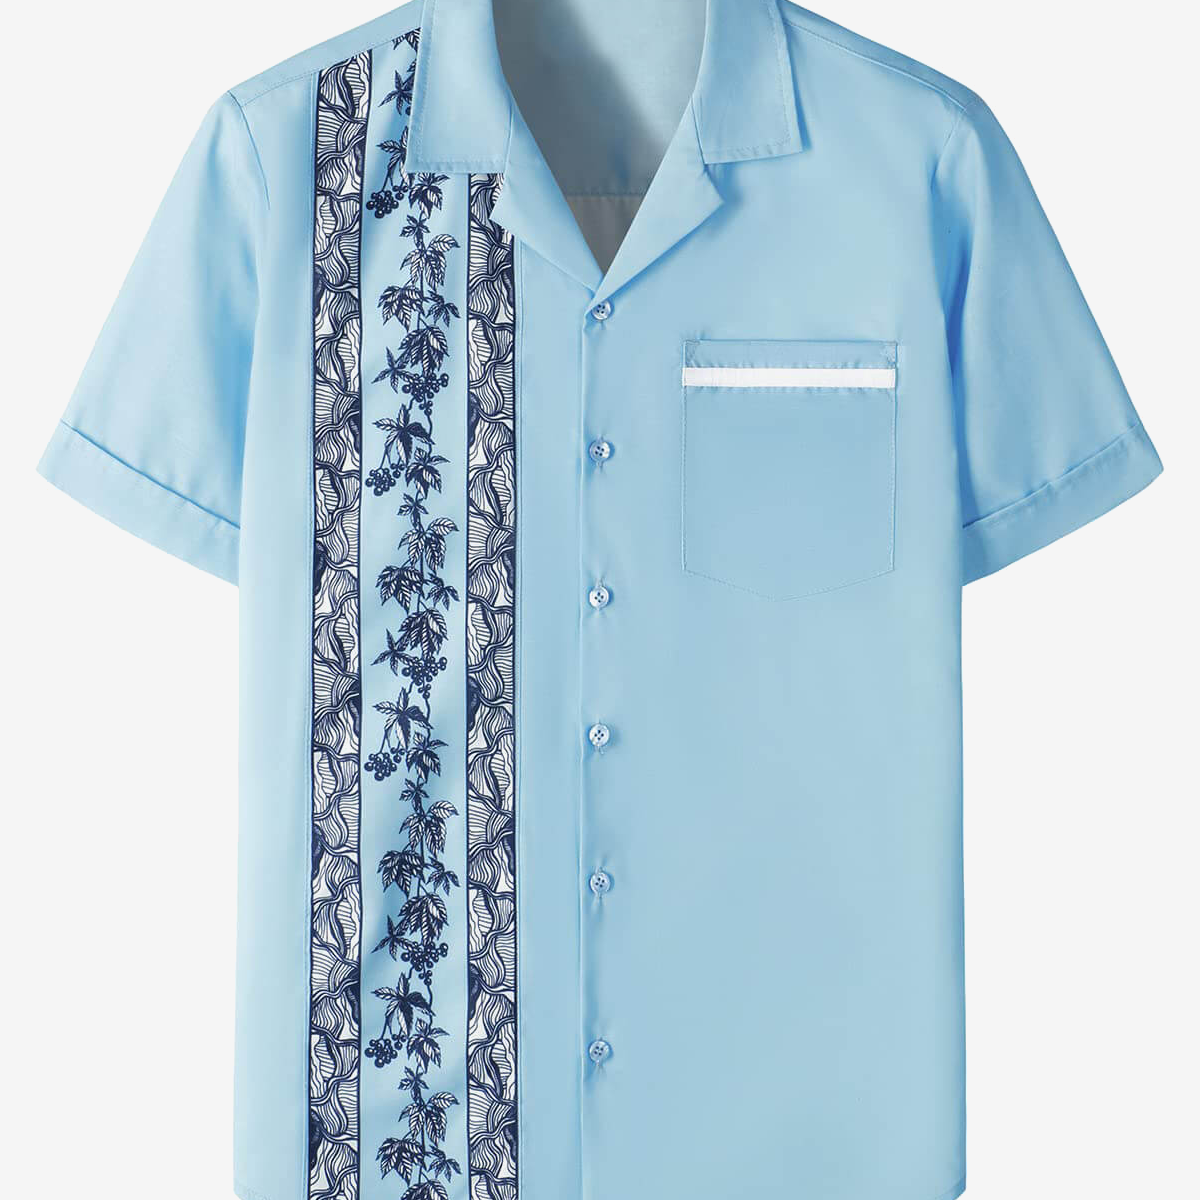 Chemise à manches courtes bleu clair à imprimé floral des années 50 de style rockabilly pour hommes